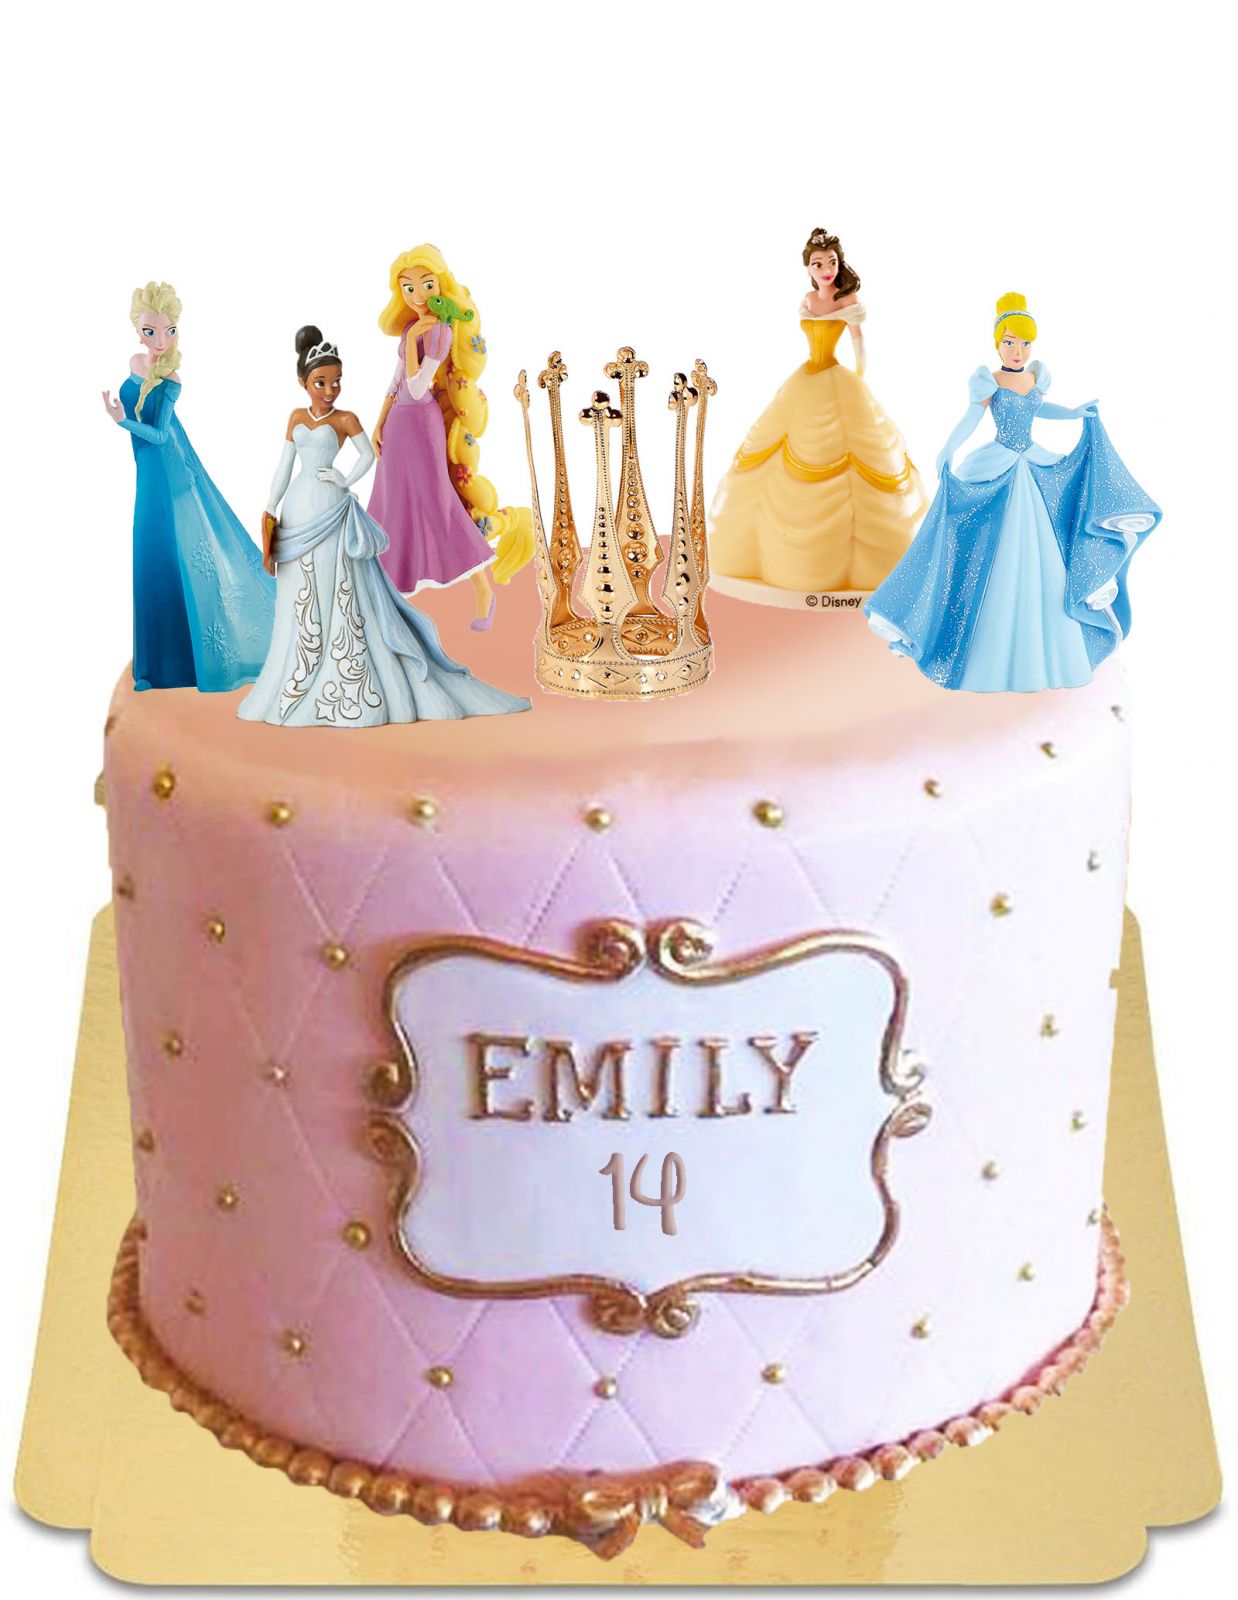 Gâteau d'anniversaire Princesse Raiponce - livraison à domicile